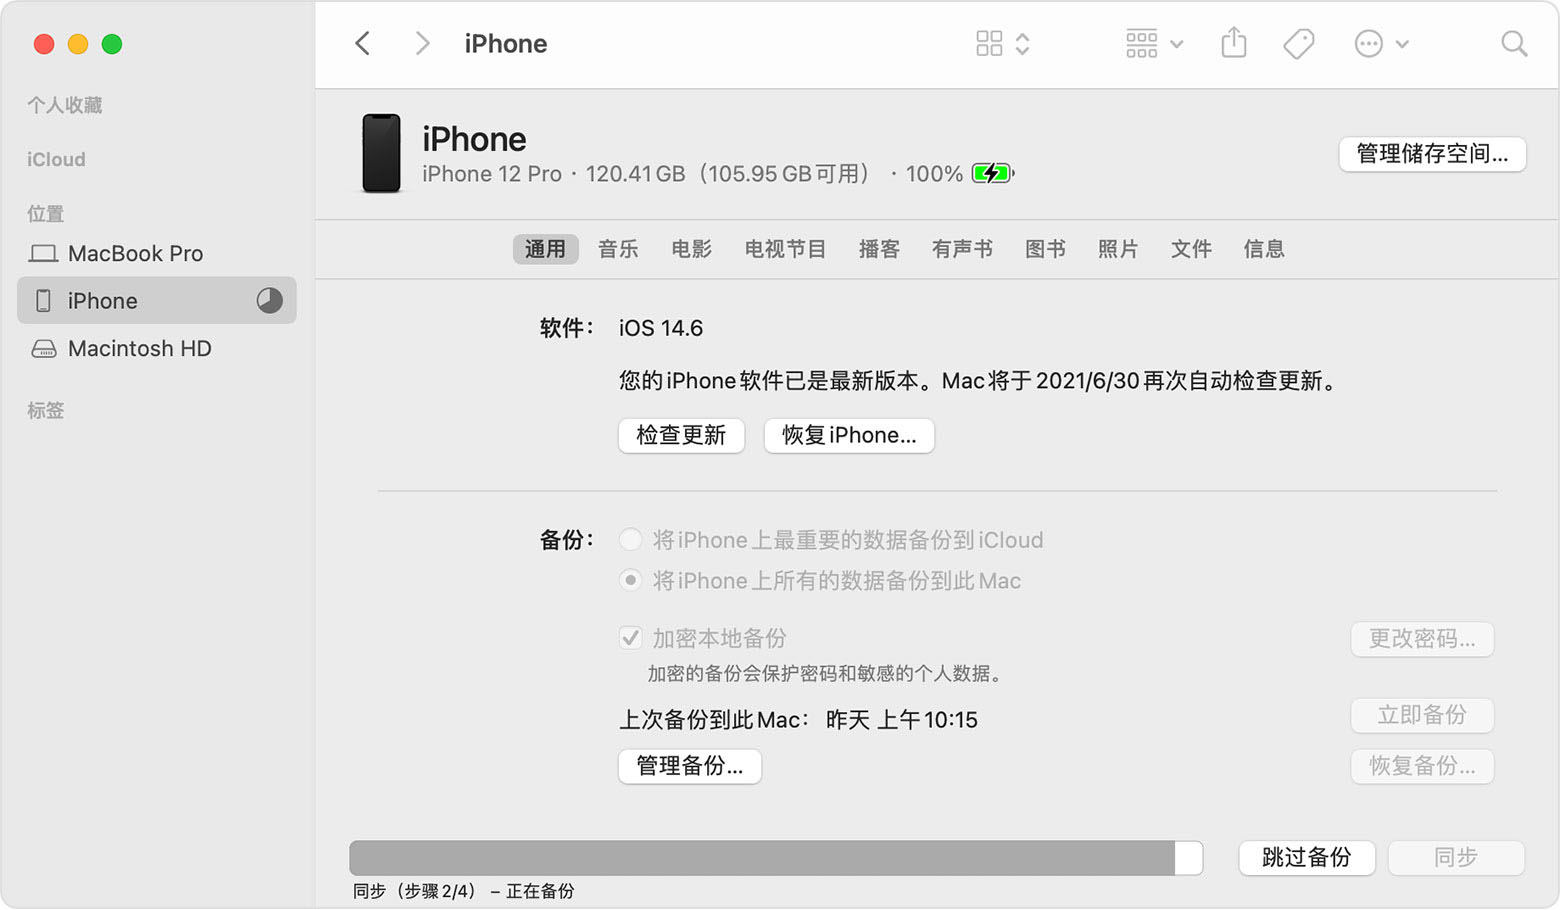 “访达”窗口显示了正在进行 iPhone 备份。